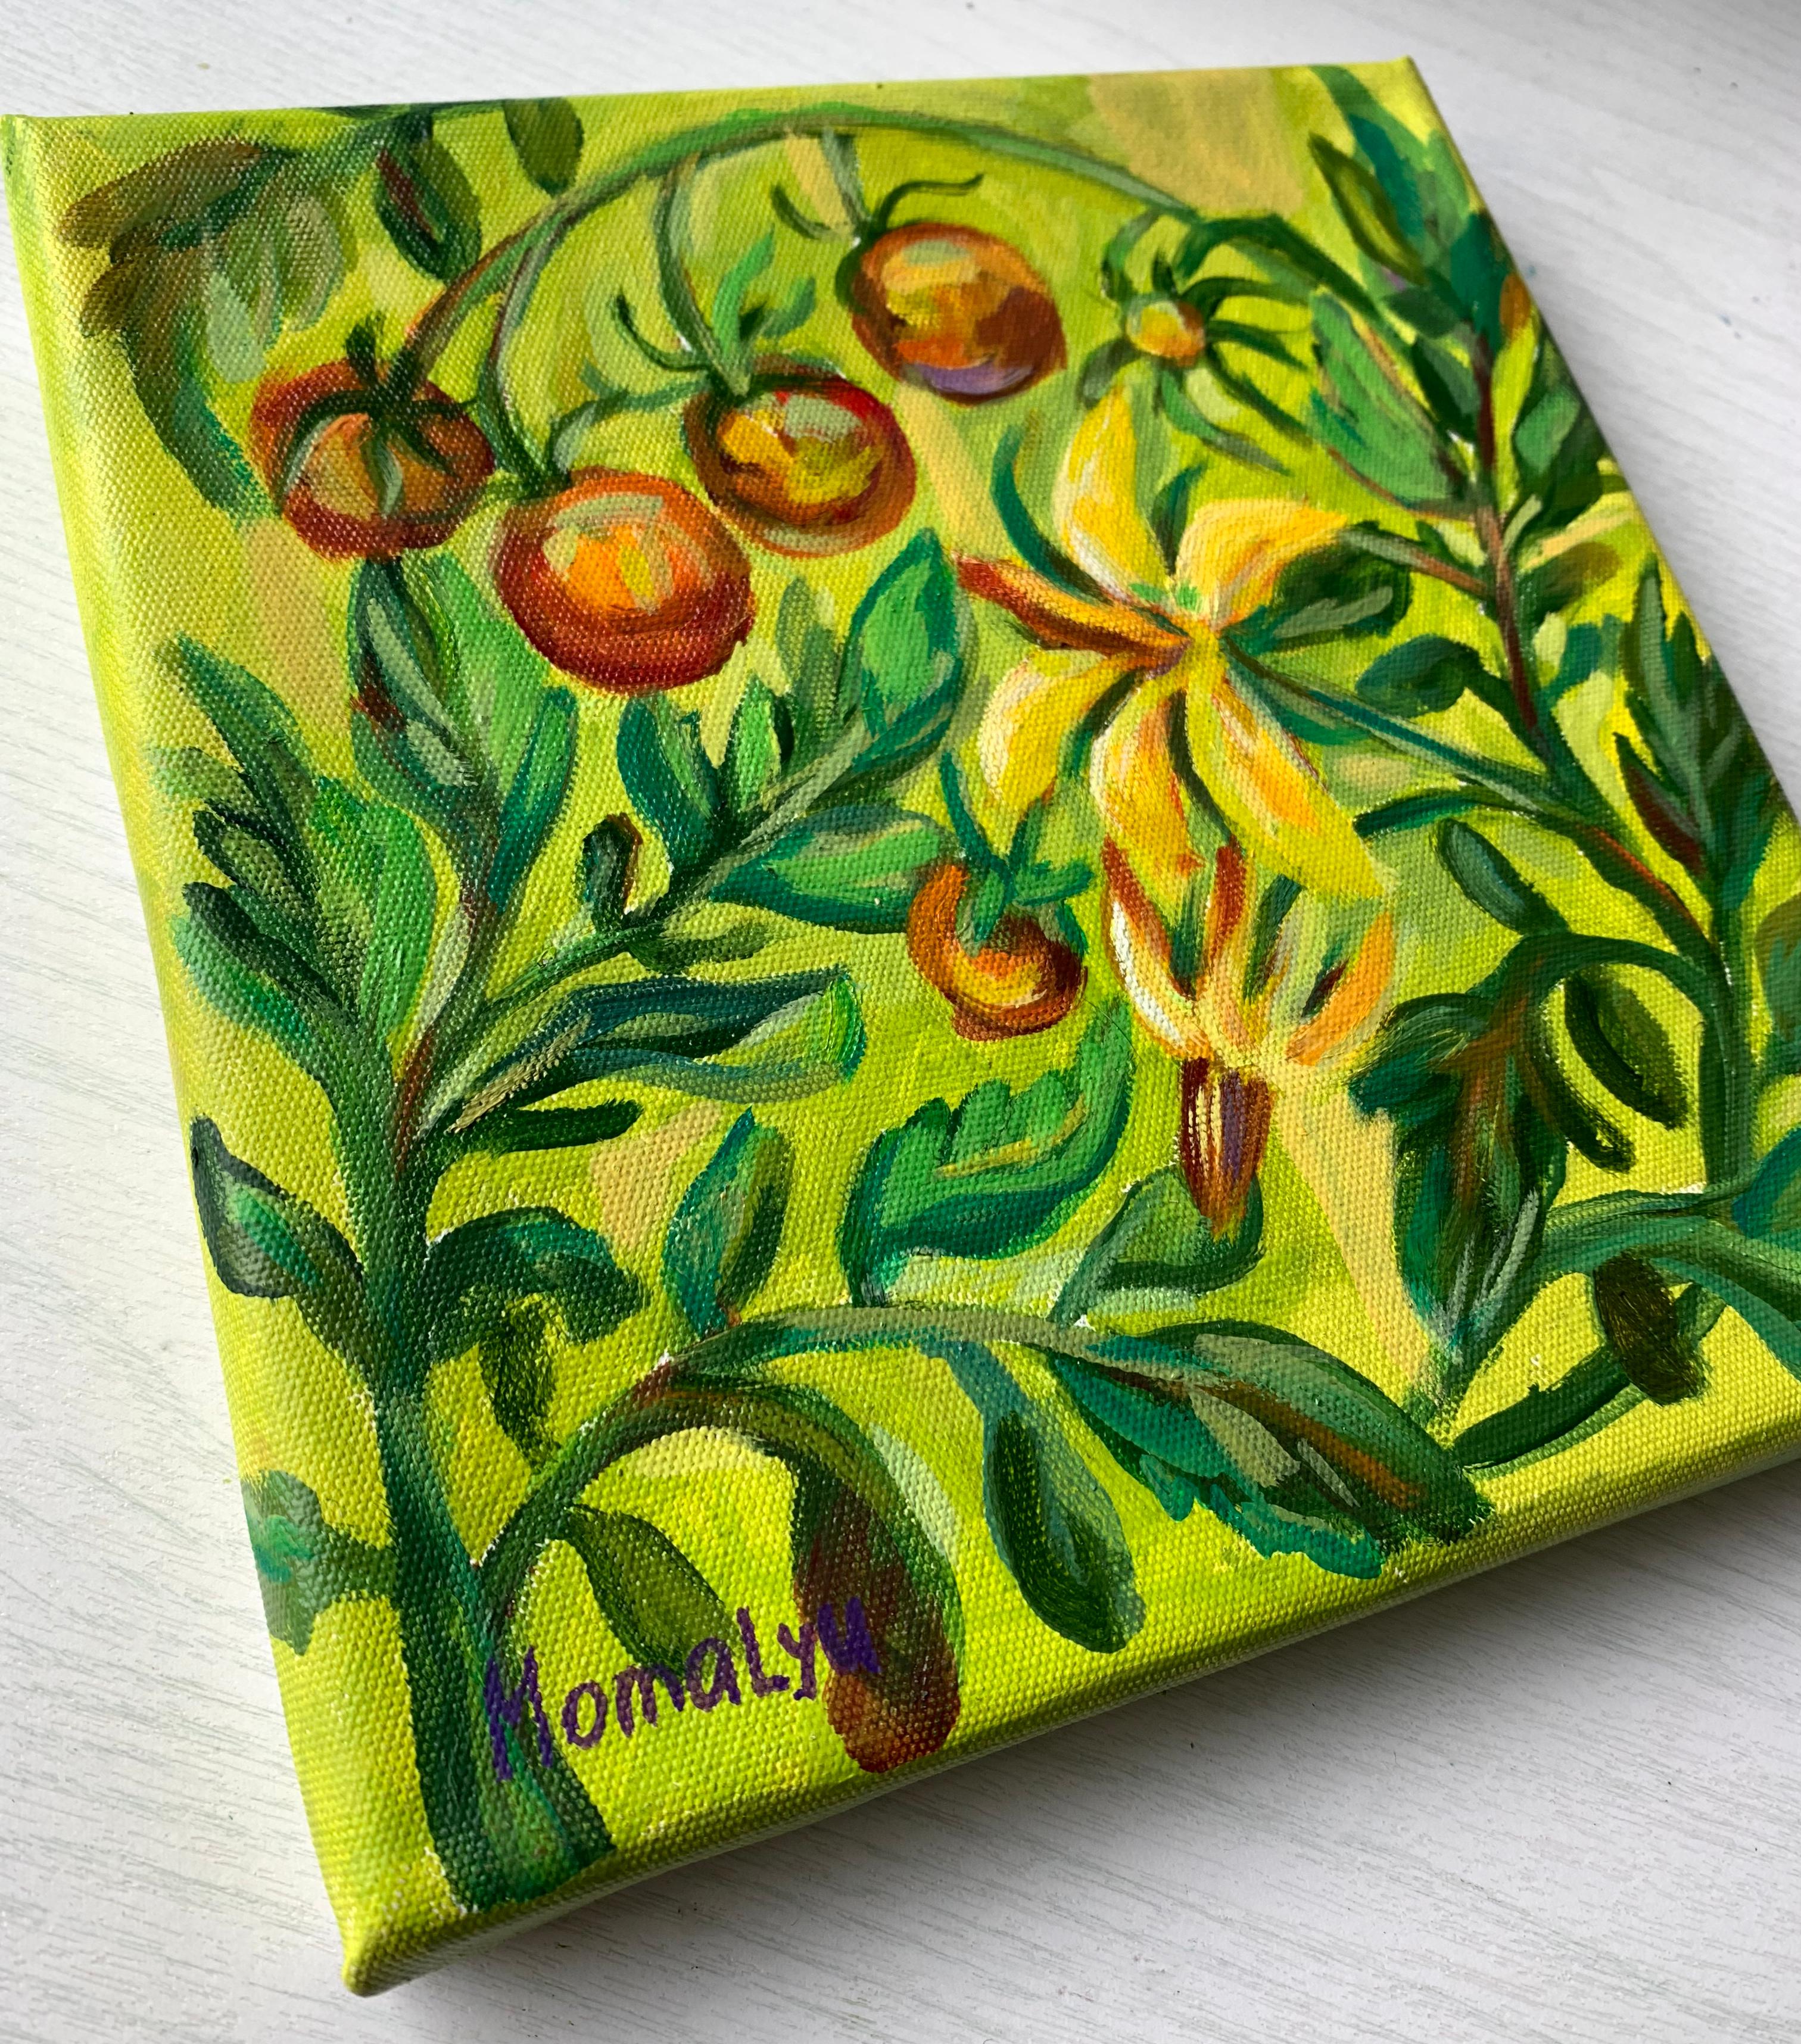 Taste of summer. Ornate plants. Miniature  oil painting.  - Print by Momalyu Liubov